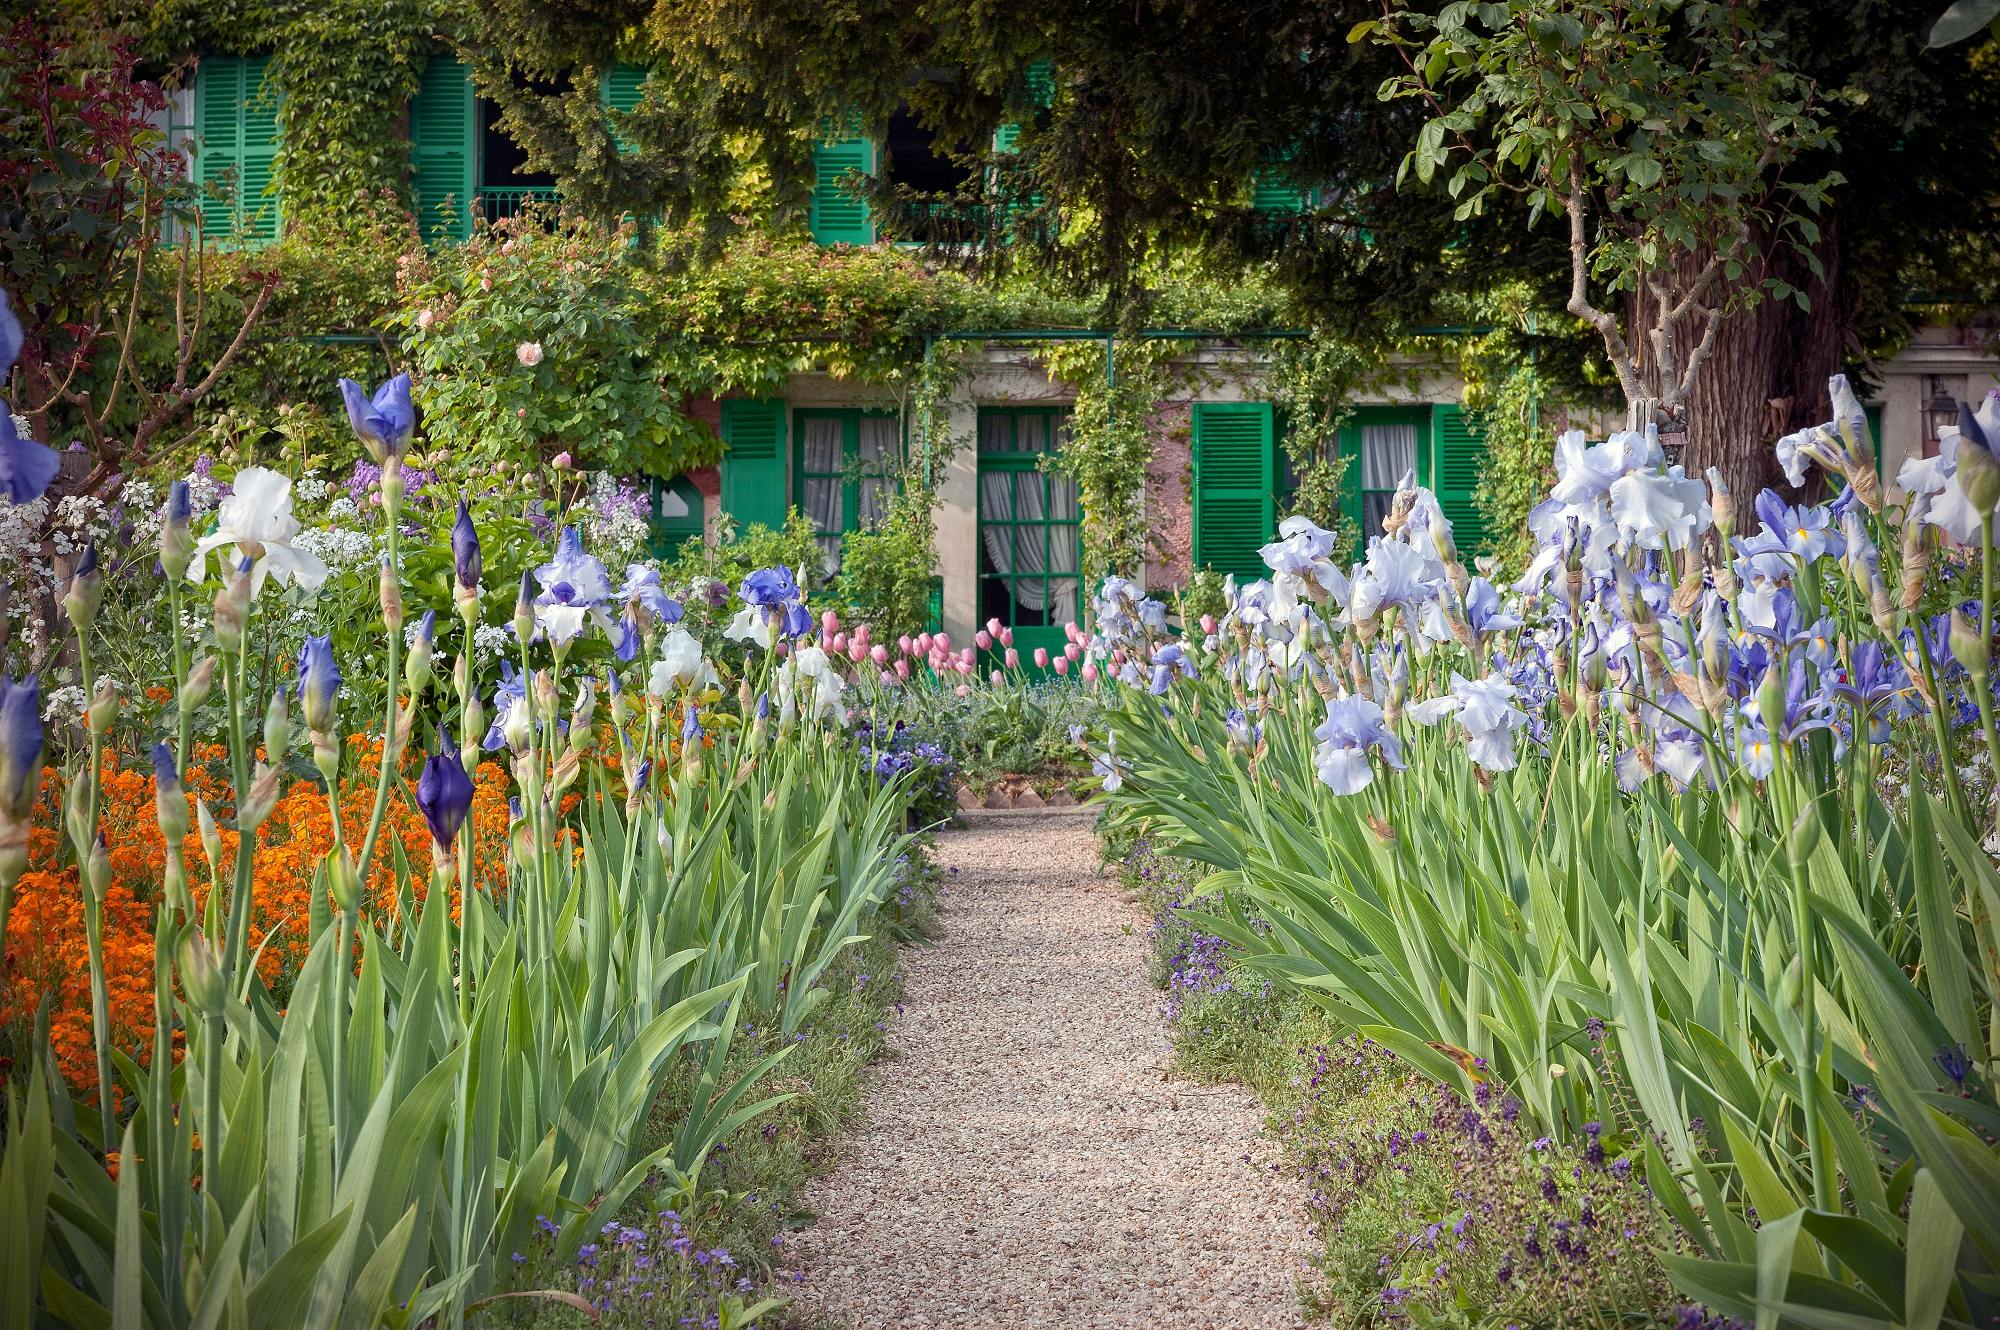 Excursão para Giverny e Museu Marmottan Monet